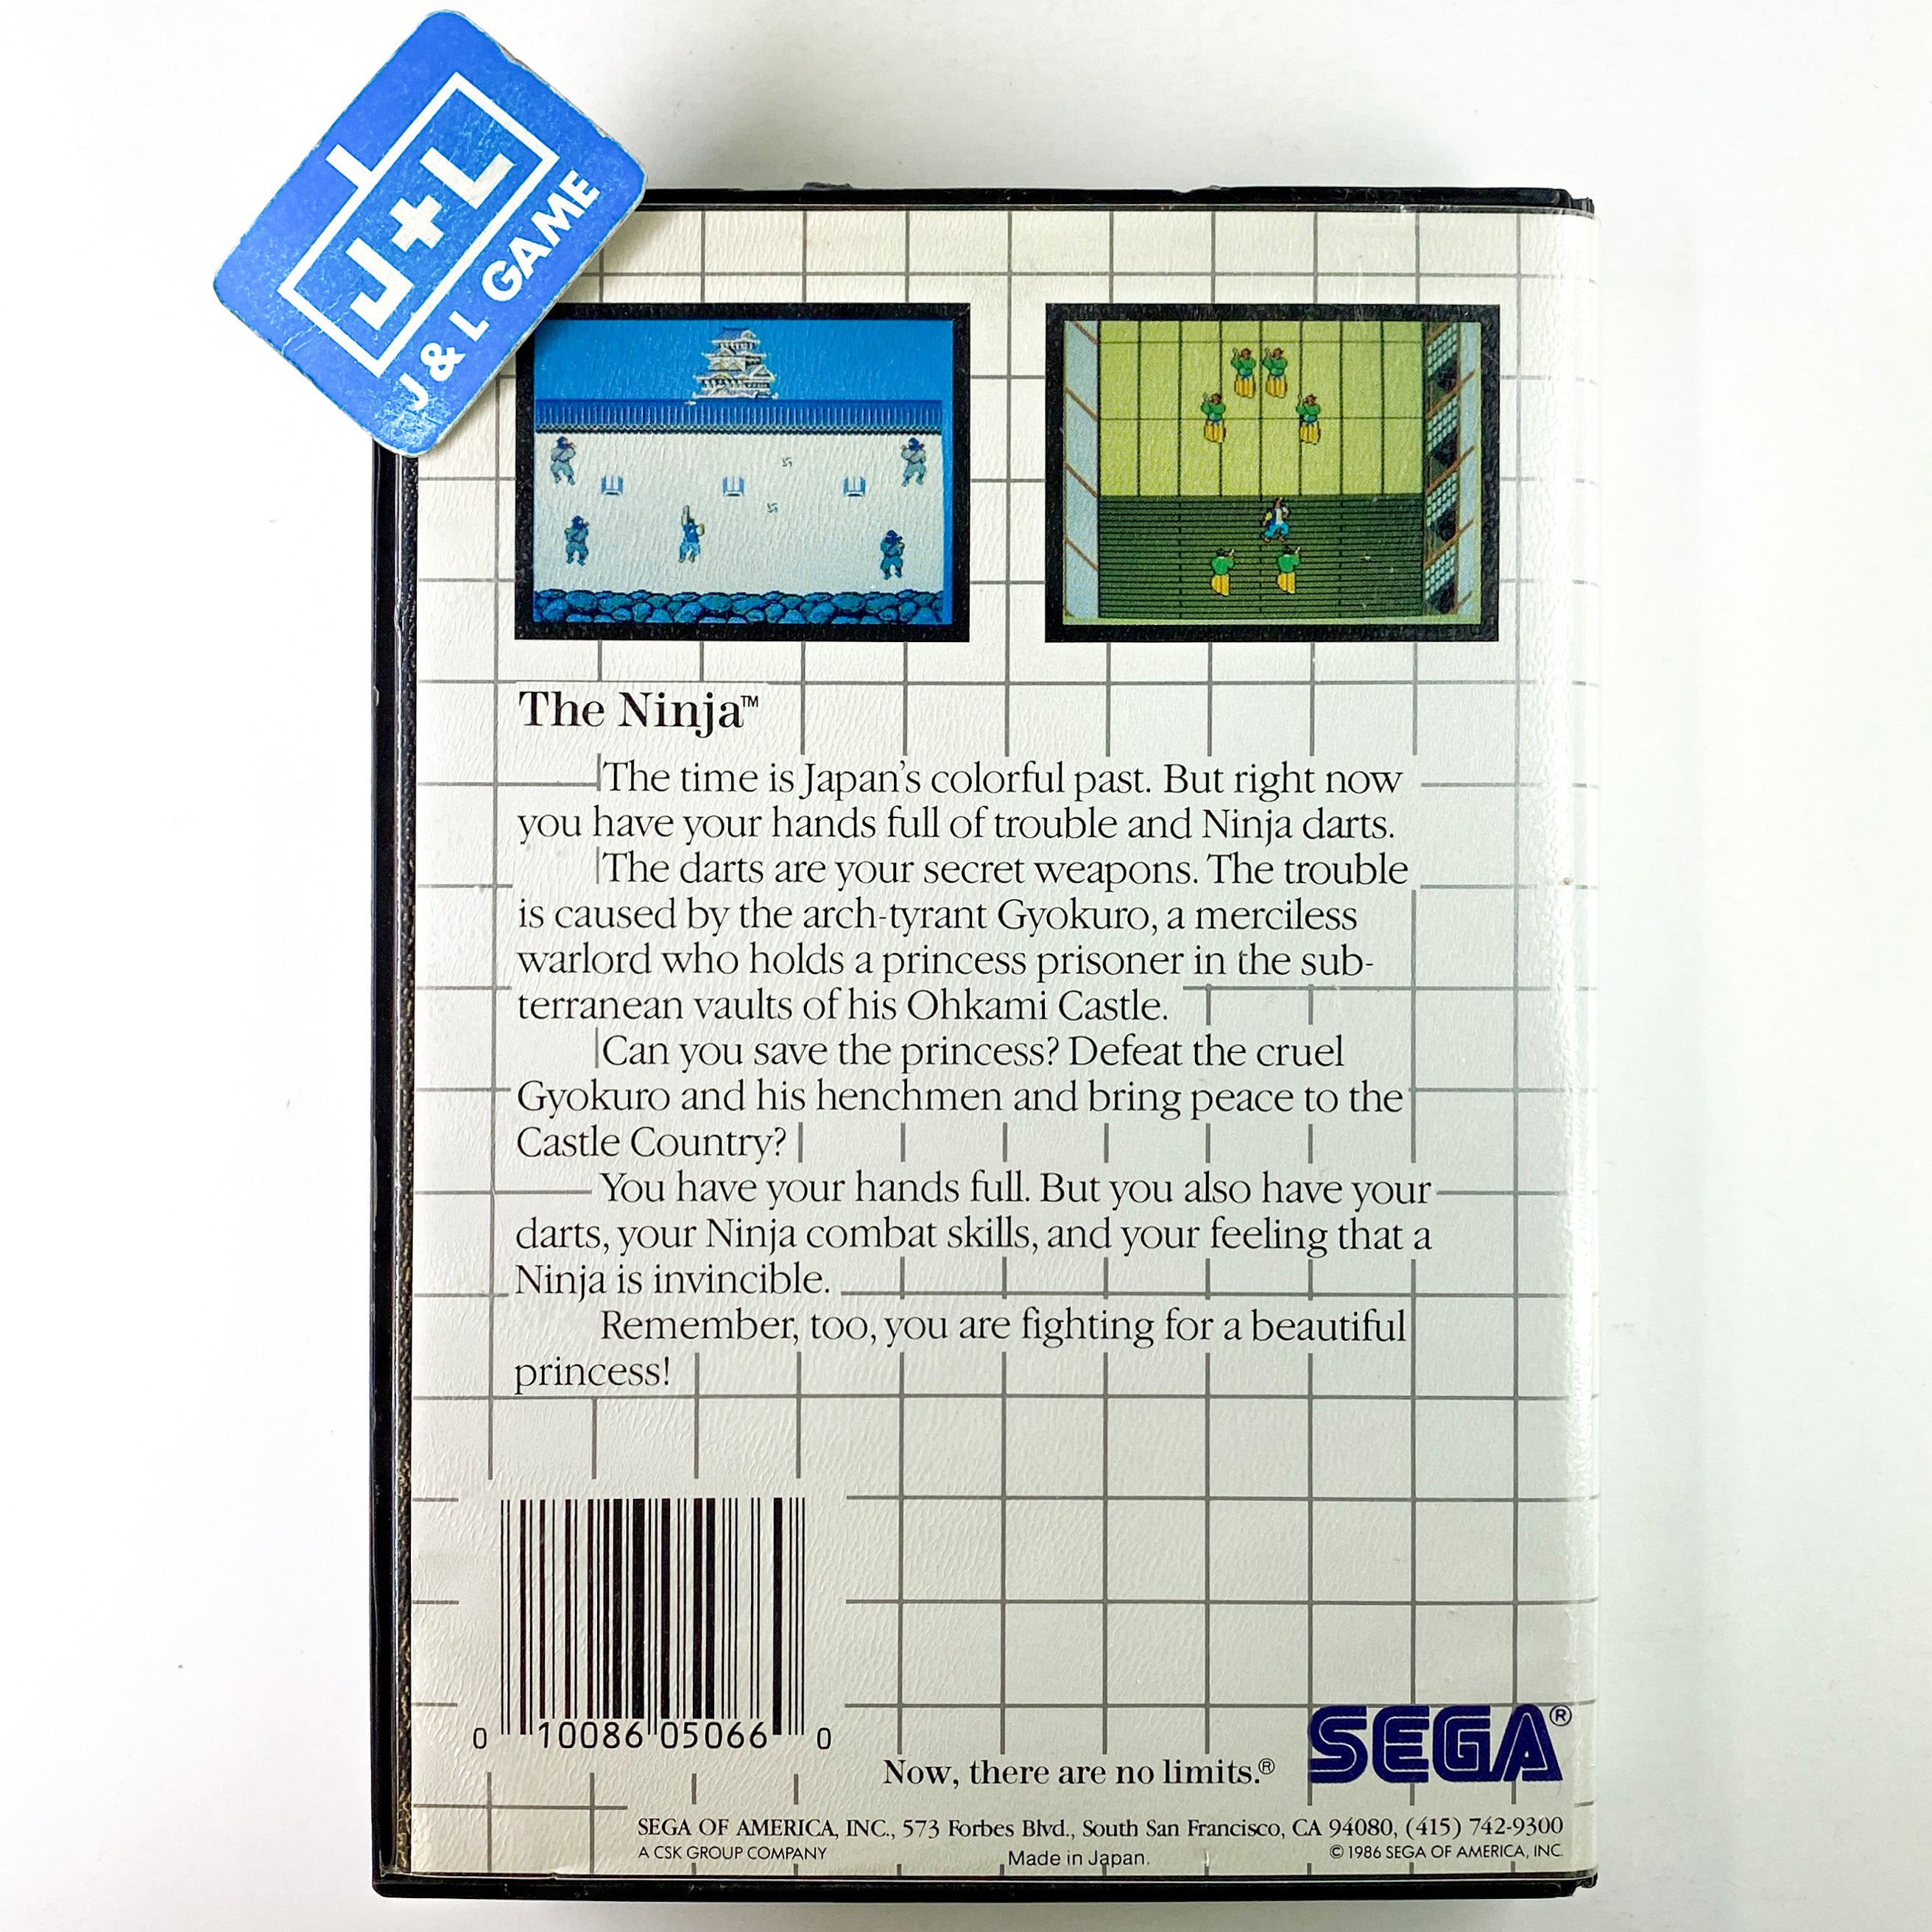 The Ninja - (SMS) SEGA Master System [Pre-Owned] Video Games Sega   